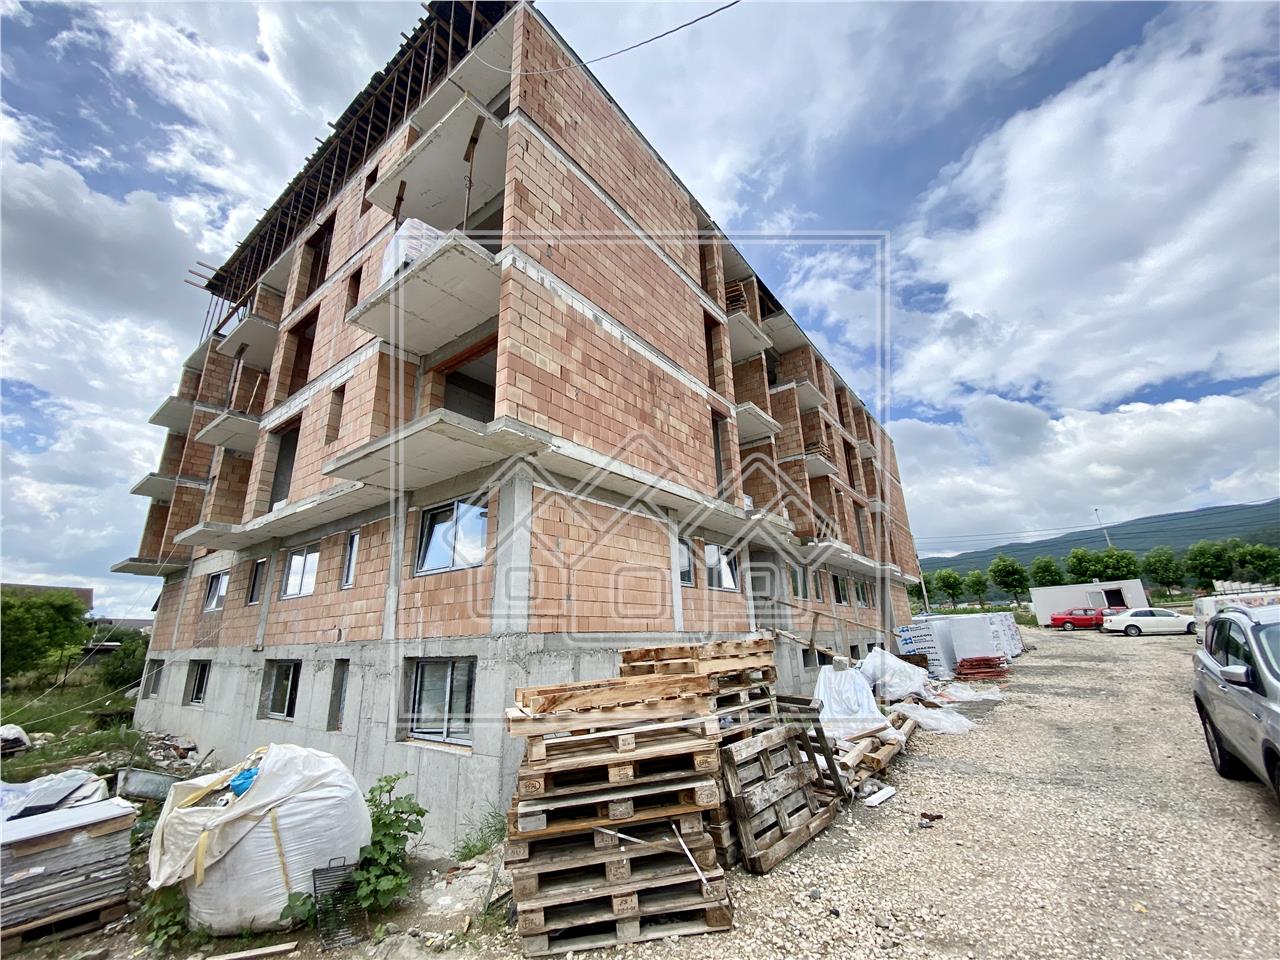 Apartament de vanzare in Alba Iulia - finisat la cheie, cu balcon